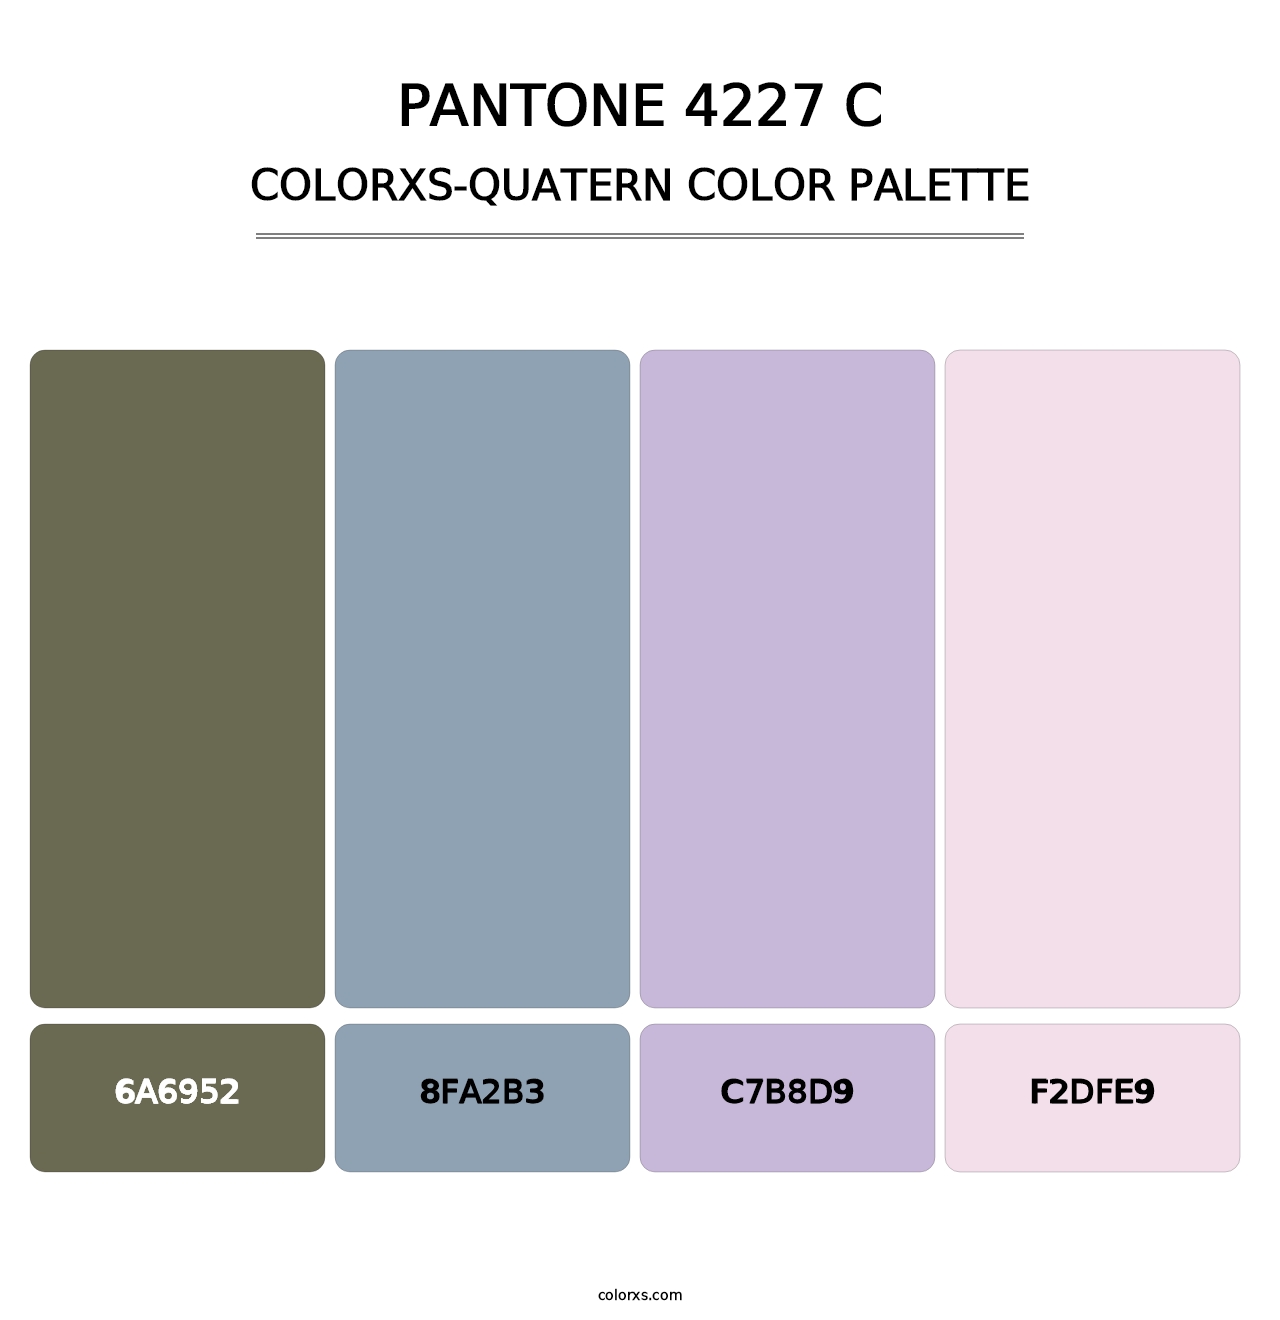 PANTONE 4227 C - Colorxs Quatern Palette